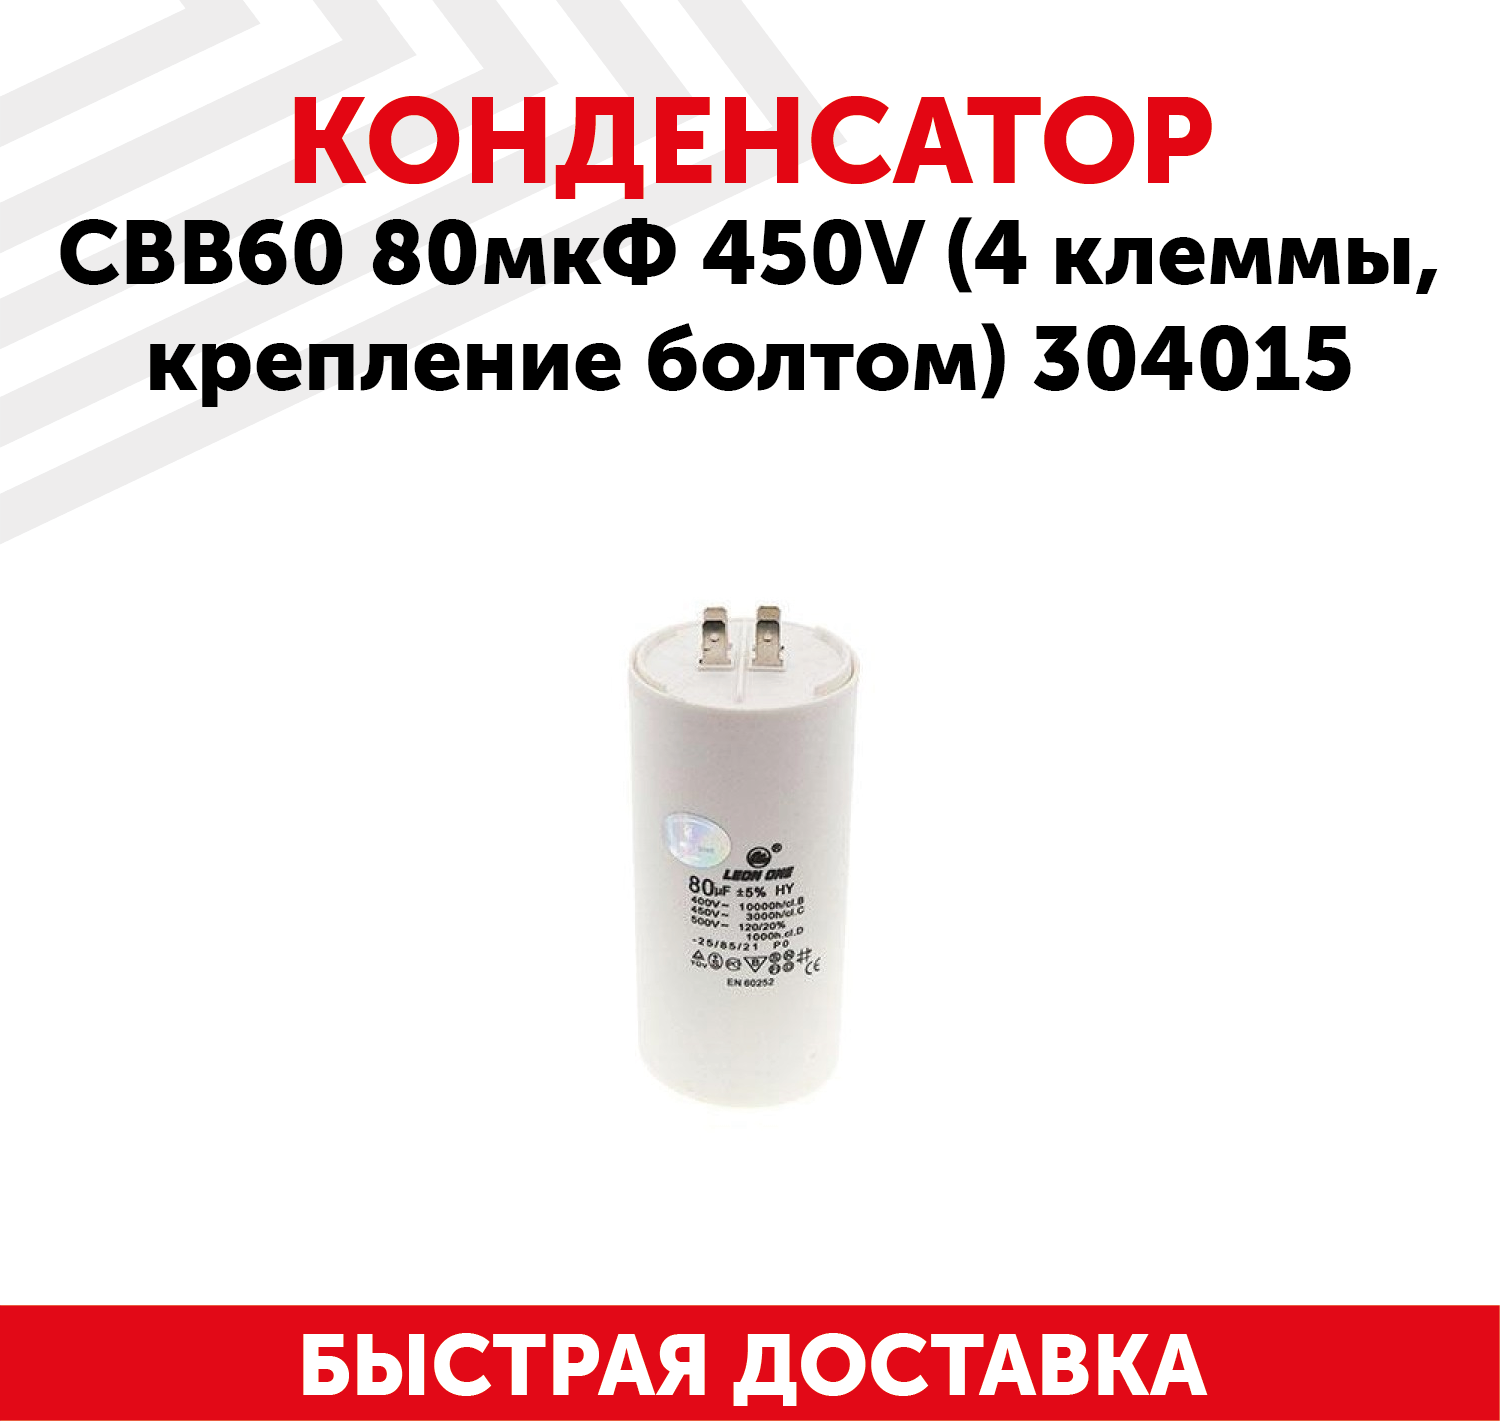 Конденсатор CBB60 80мкФ, 450В для электро- и бензоинструмента, 4 клеммы, крепление болтом, 304015